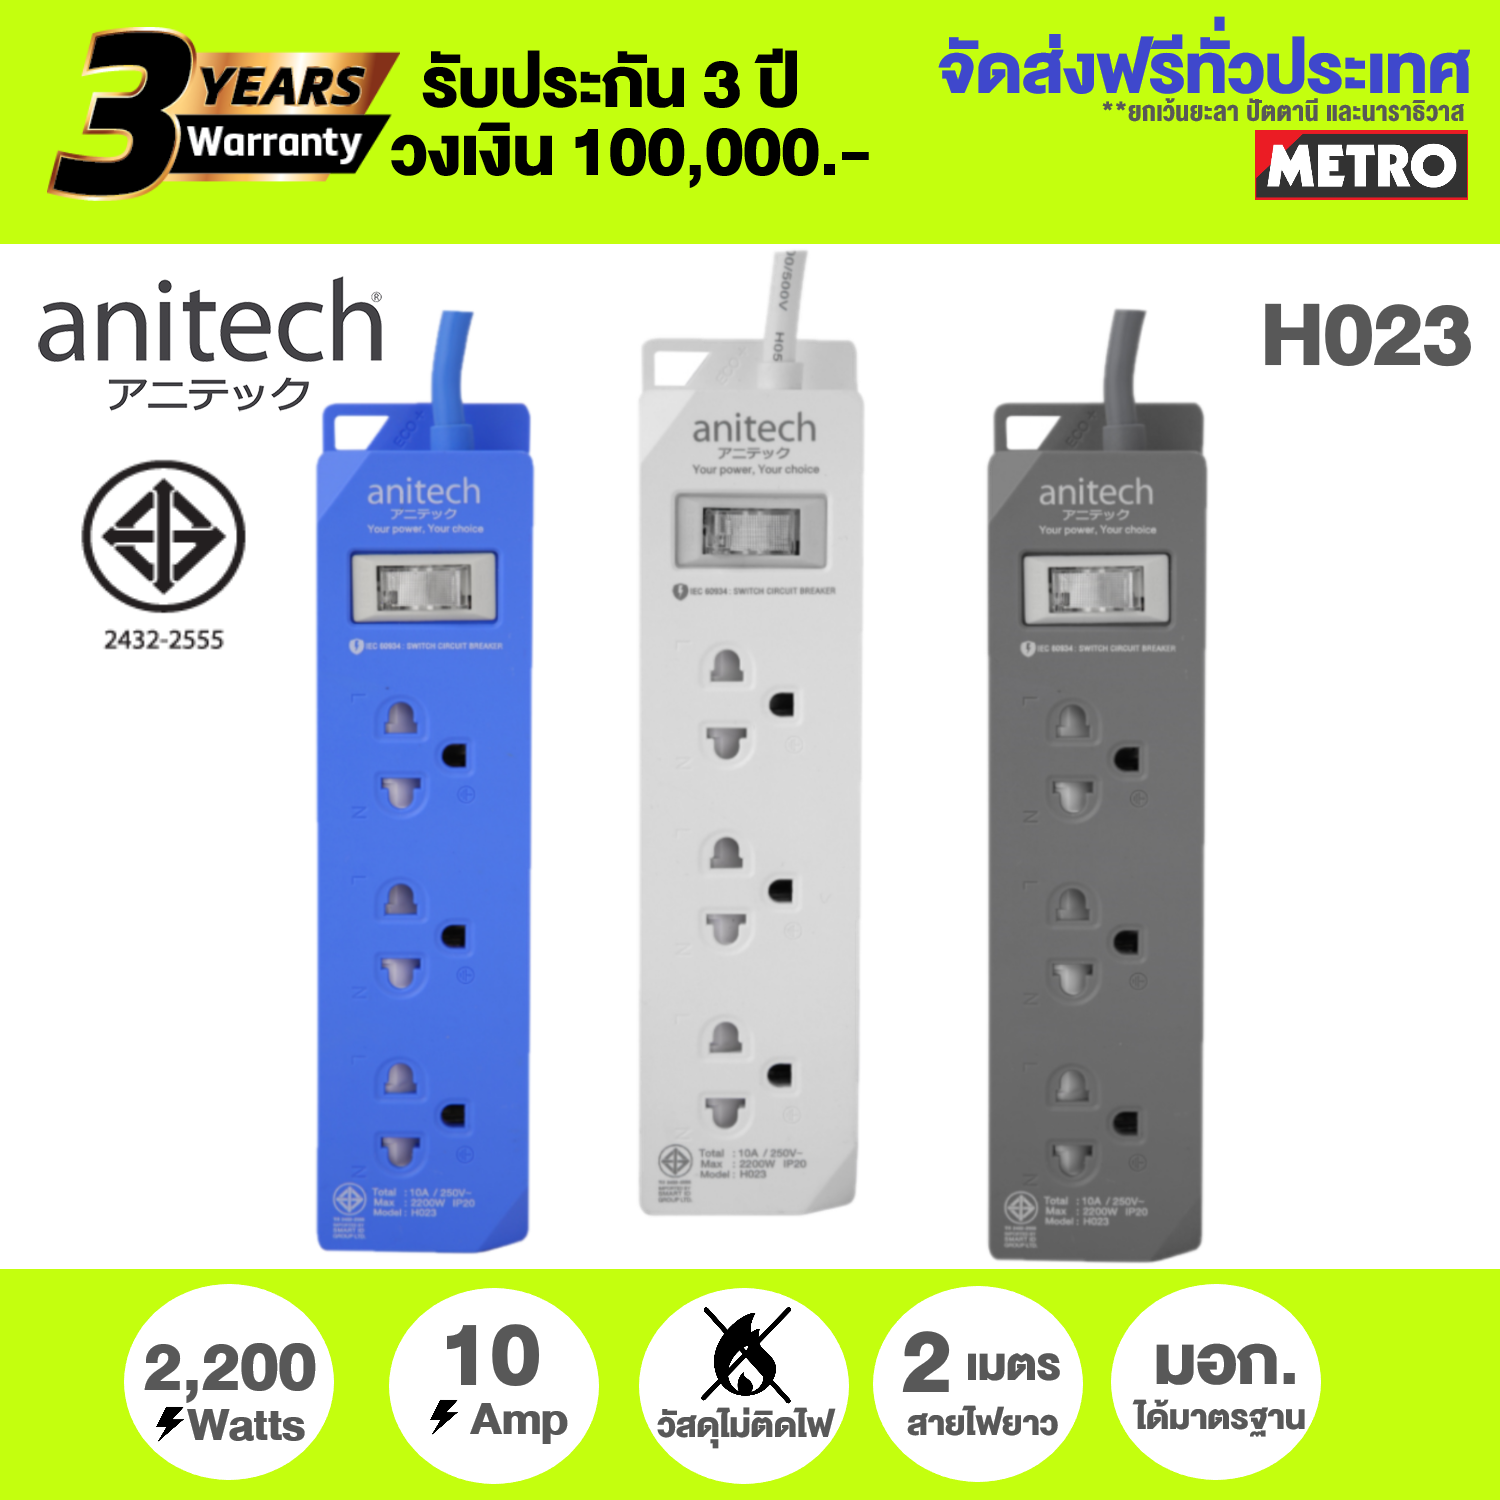 ปลั๊กไฟ Anitech ปลั๊กไฟต่อพ่วง รางปลั๊กไฟ 2 เมตร มาตรฐาน มอก. H023 / H123 3ช่อง 1สวิทช์ H222 2 ช่อง 2 USB ประกัน3ปี วงเงิน1แสน by METRO